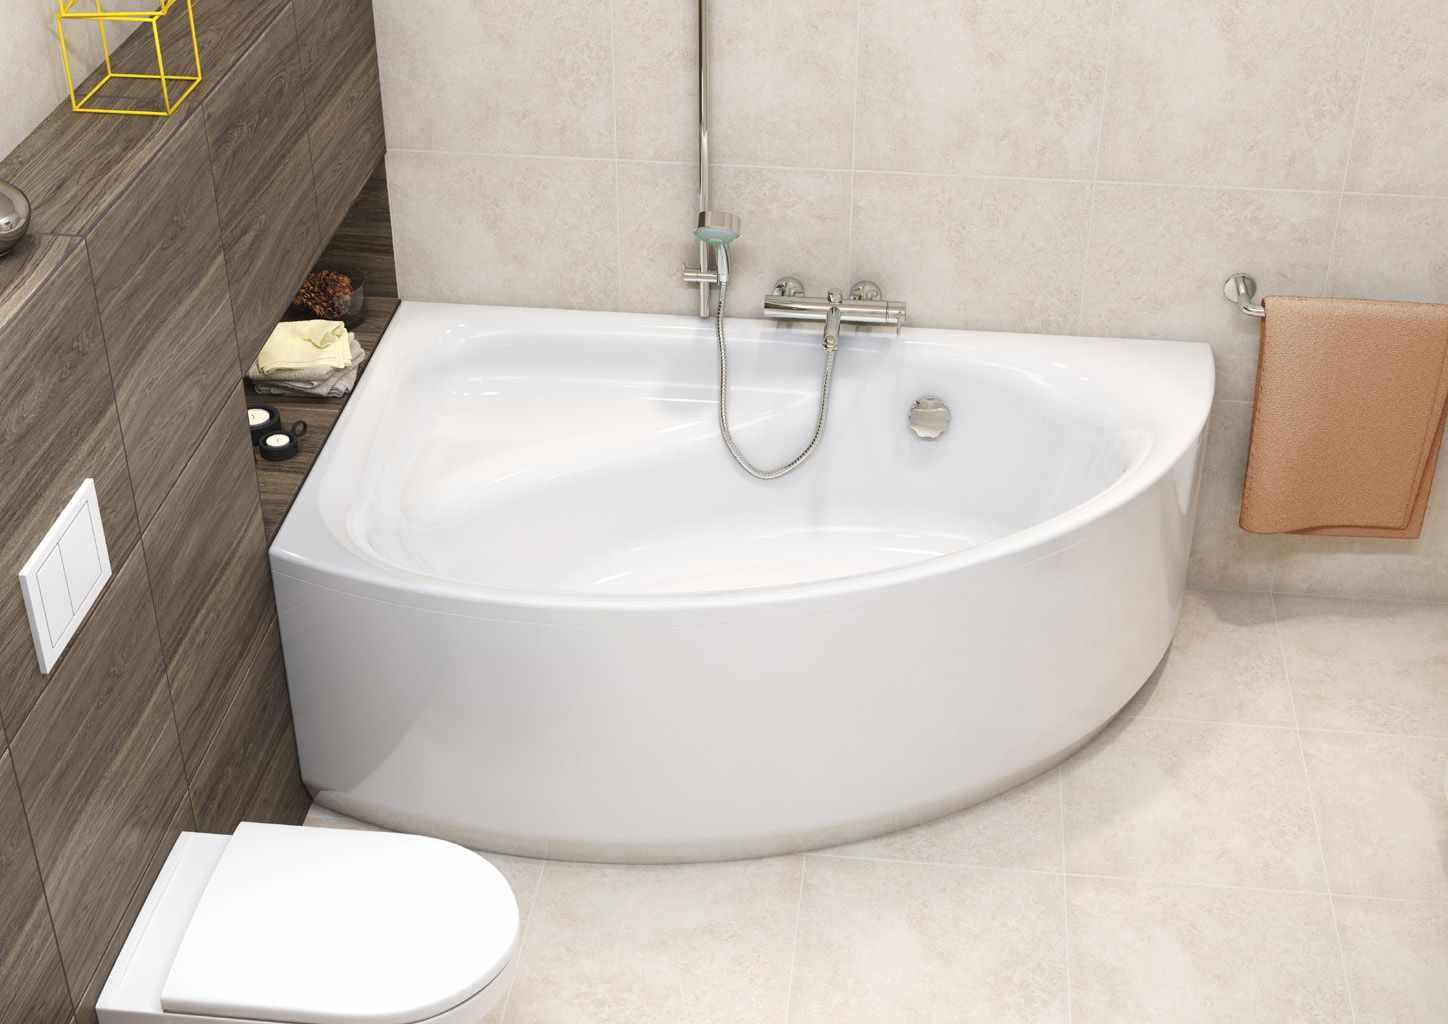 Un exemple d'une salle de bain de style lumineux avec une baignoire d'angle